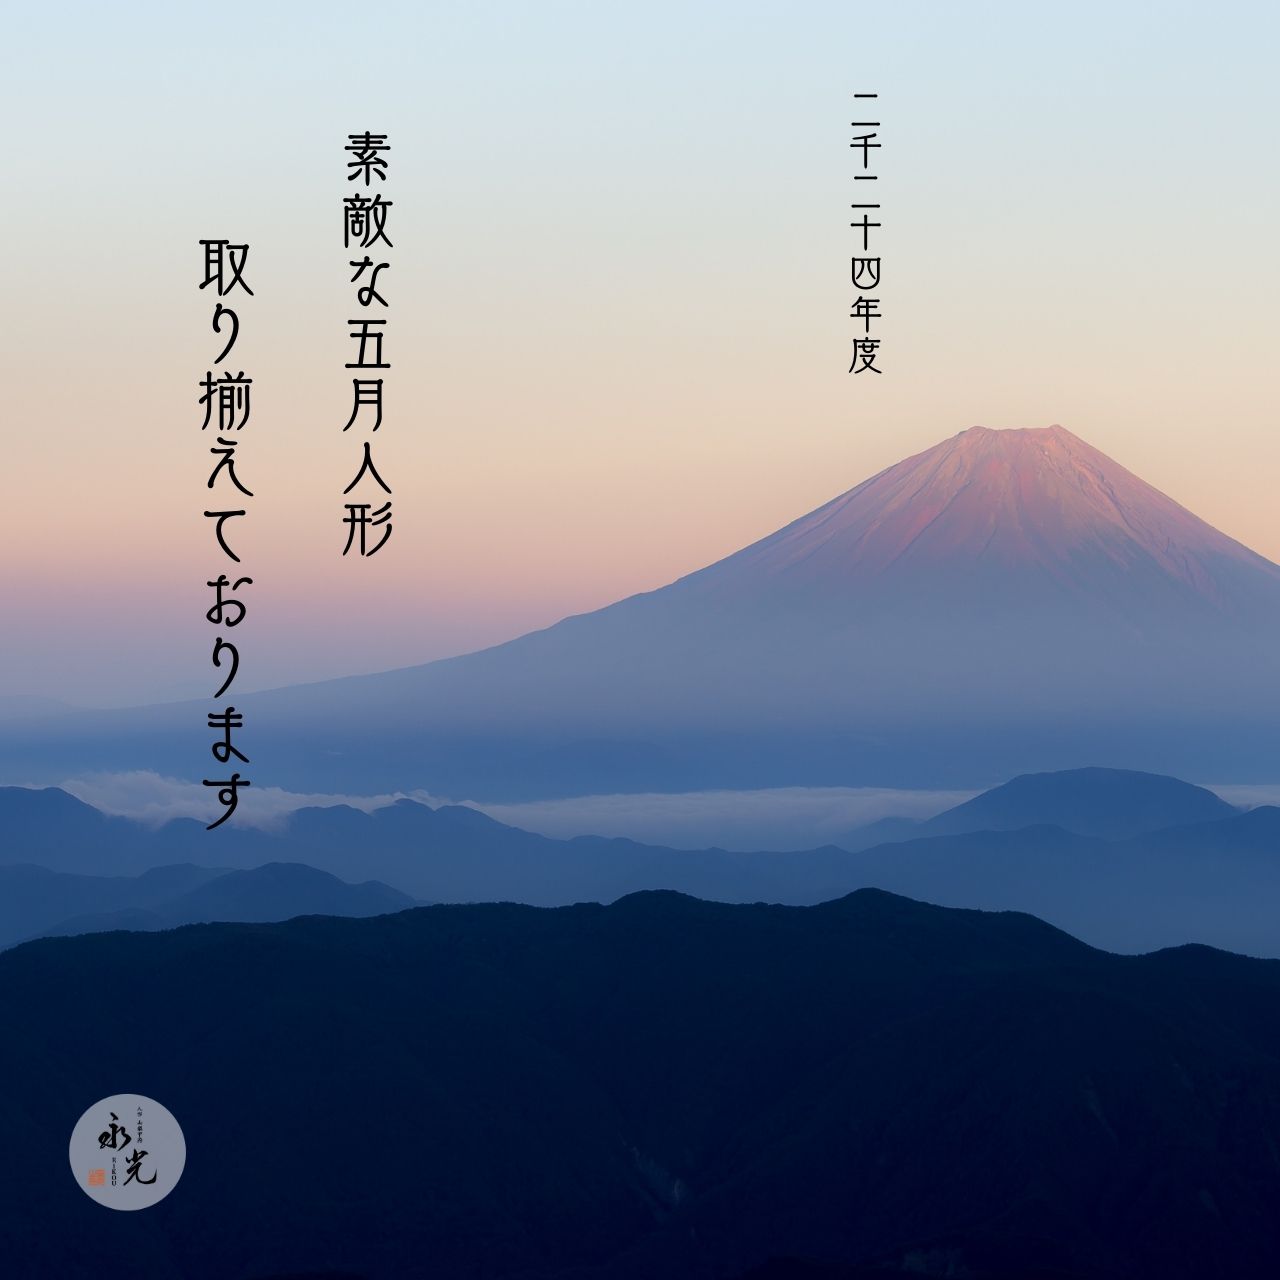 人形の永光の五月人形掲載販売のお知らせの富士山画像